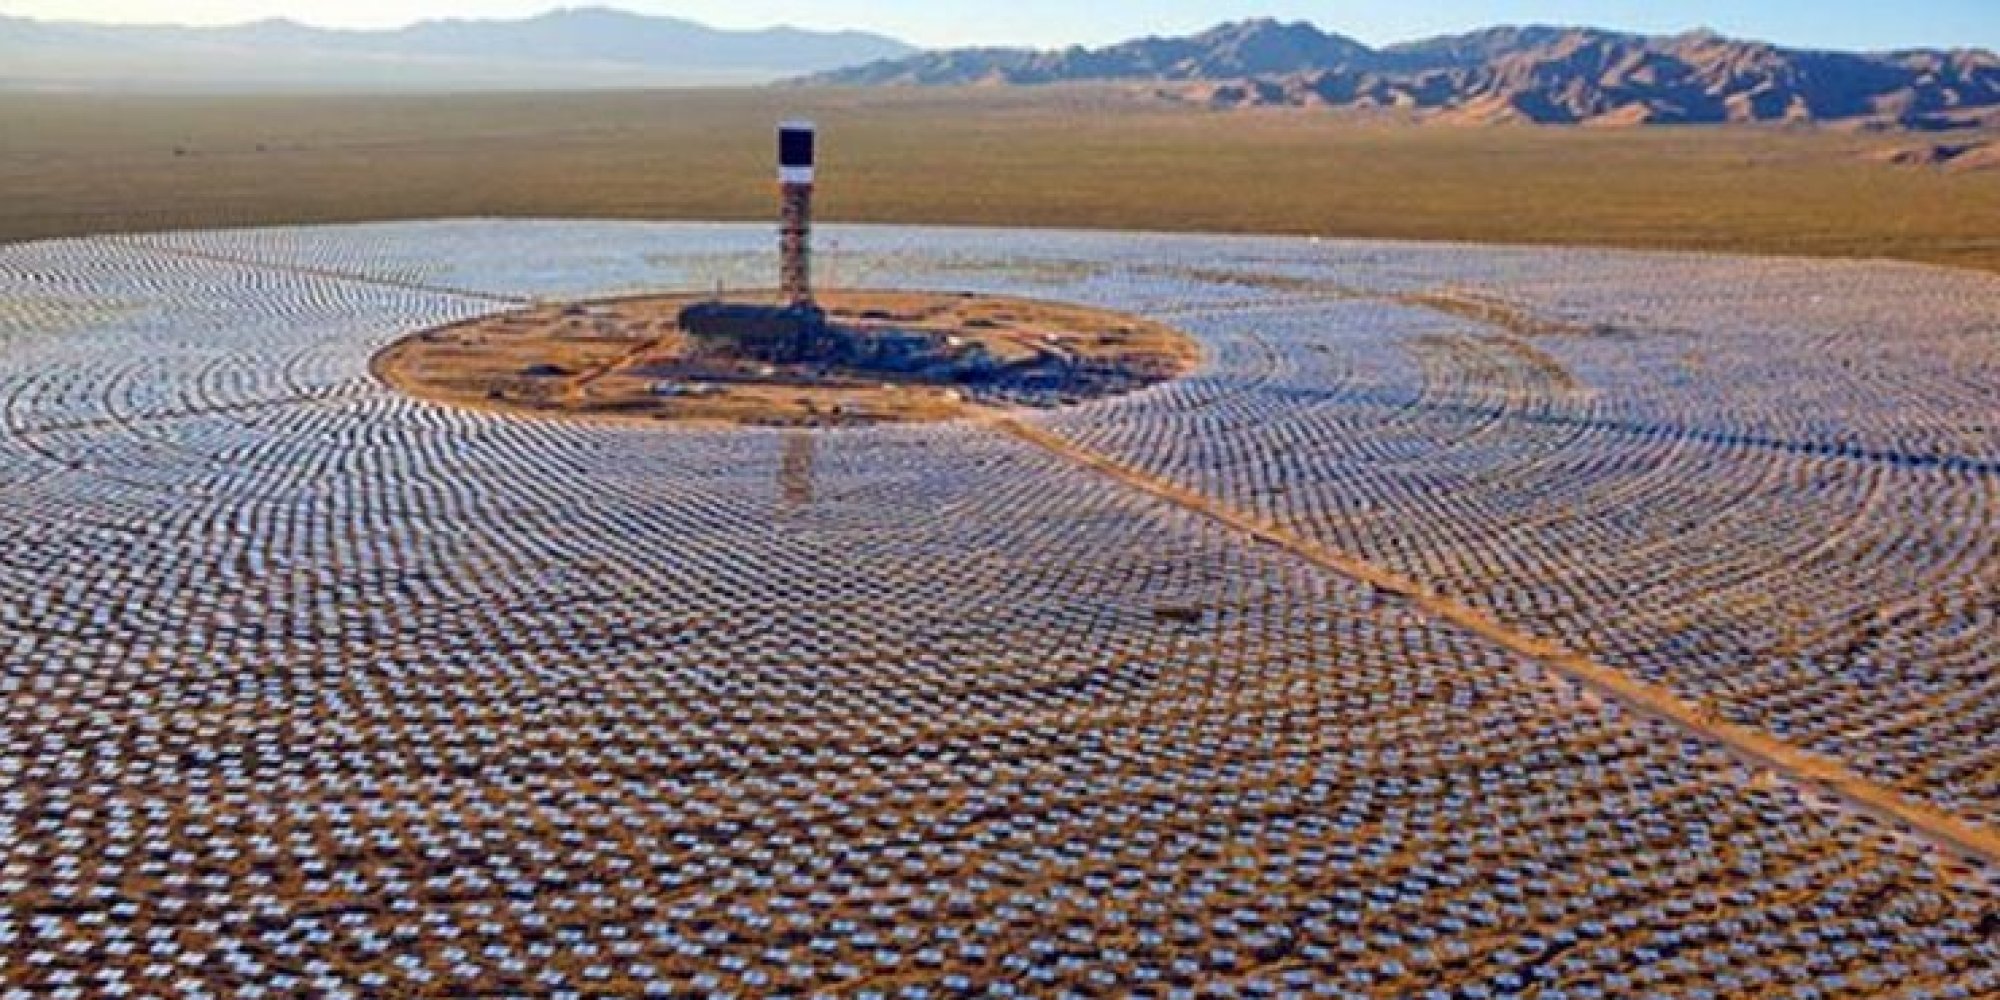 
Марокко строит крупнейшую в мире солнечную электростанцию в Уарзазате